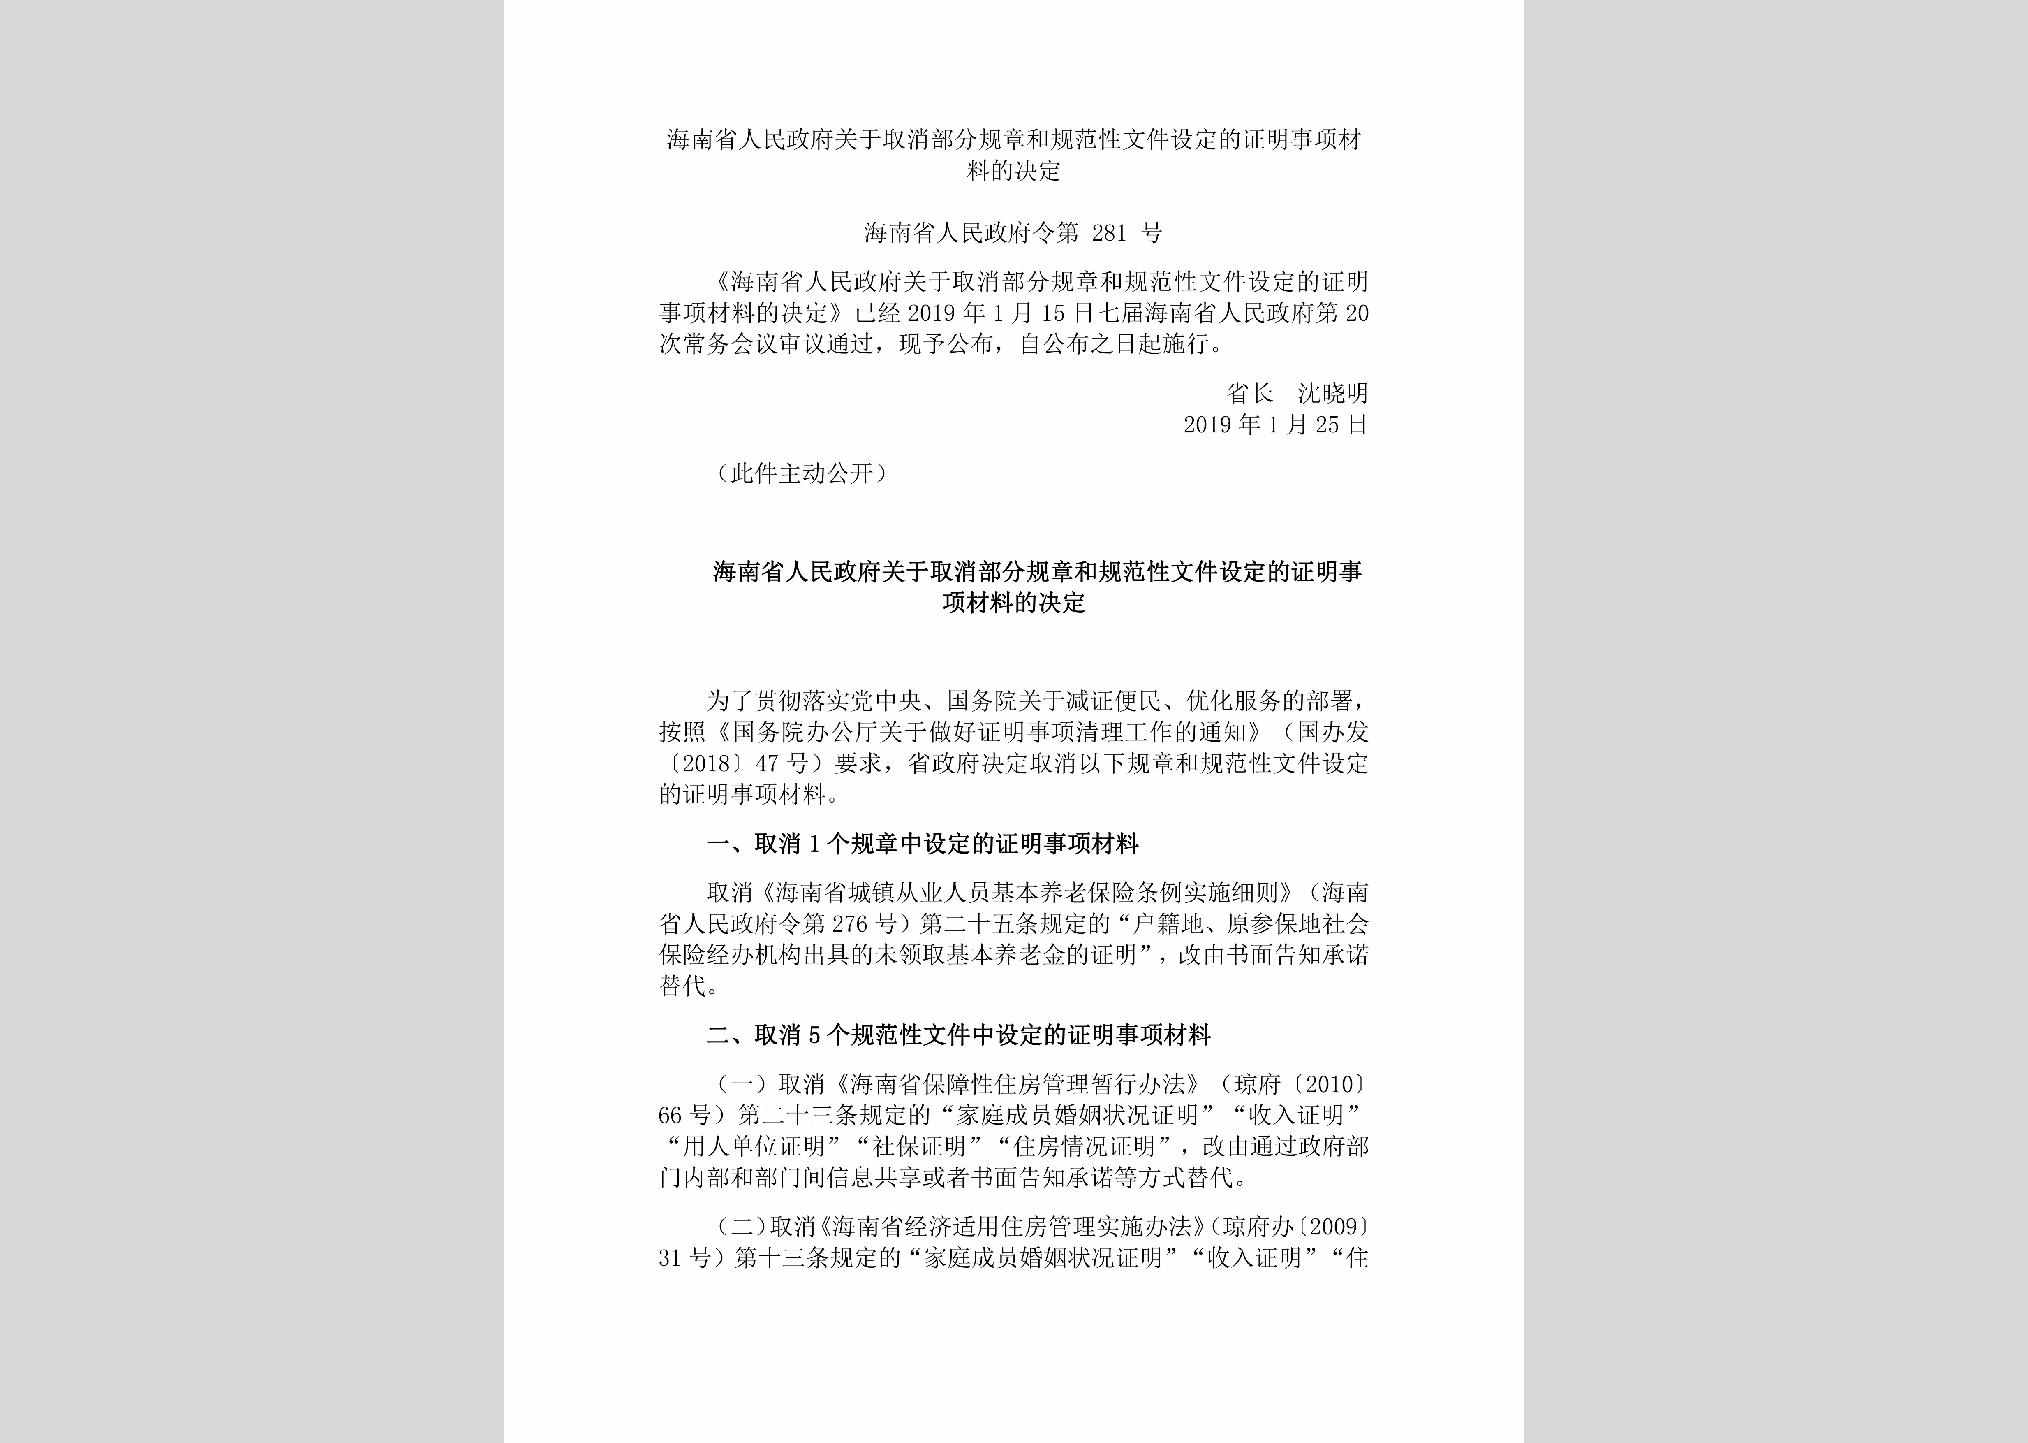 海南省人民政府令第281号：海南省人民政府关于取消部分规章和规范性文件设定的证明事项材料的决定